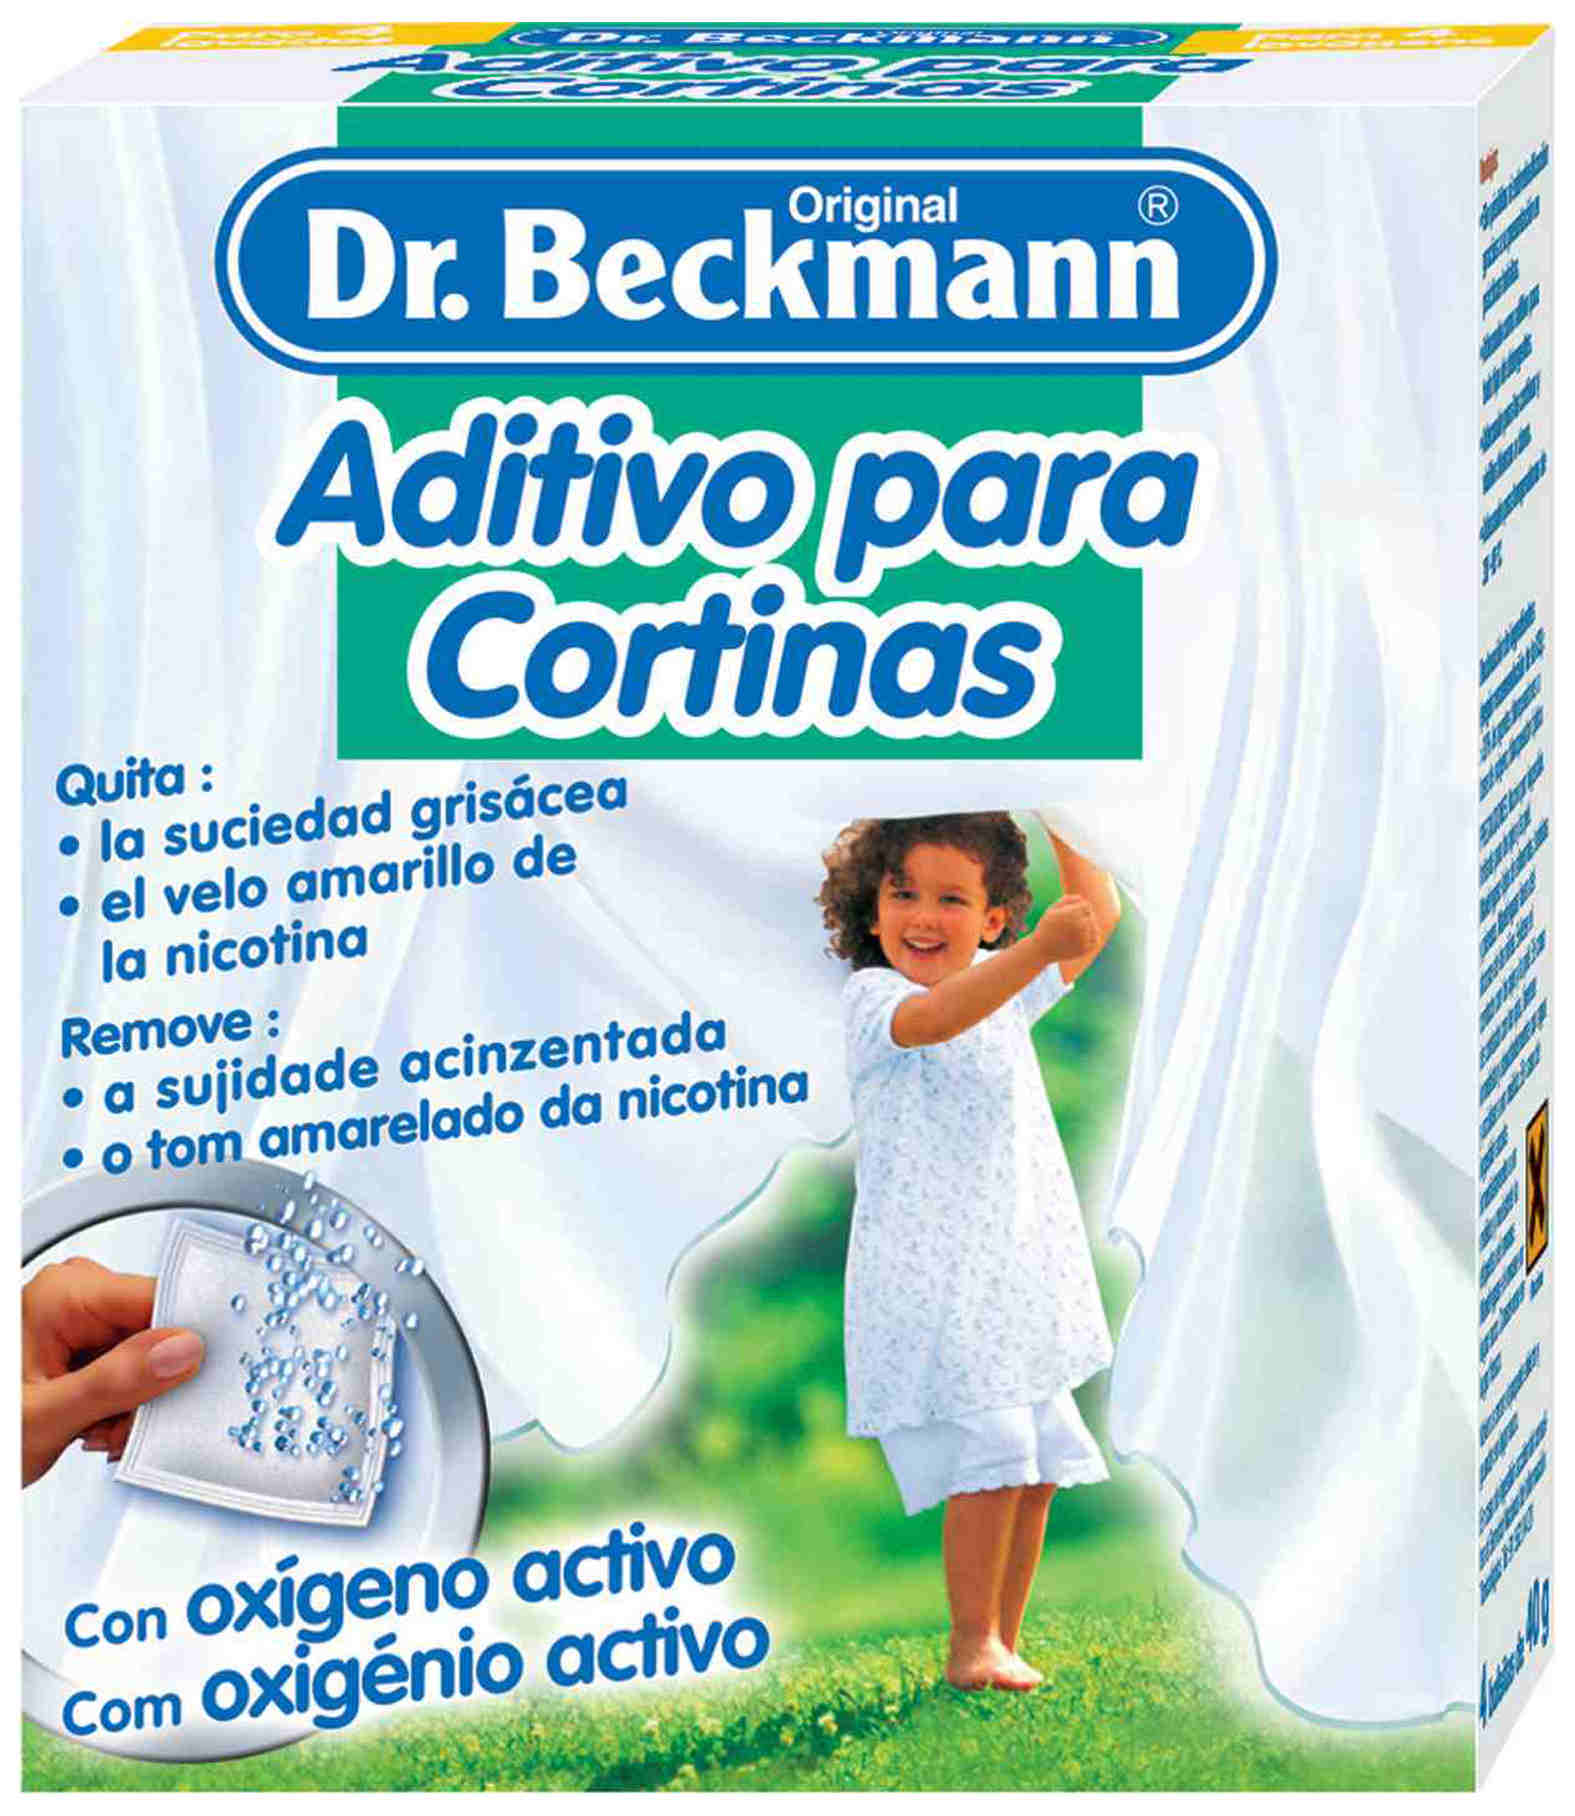 Foto Dr. Beckmann Aditivo para Cortinas 4x40 g.